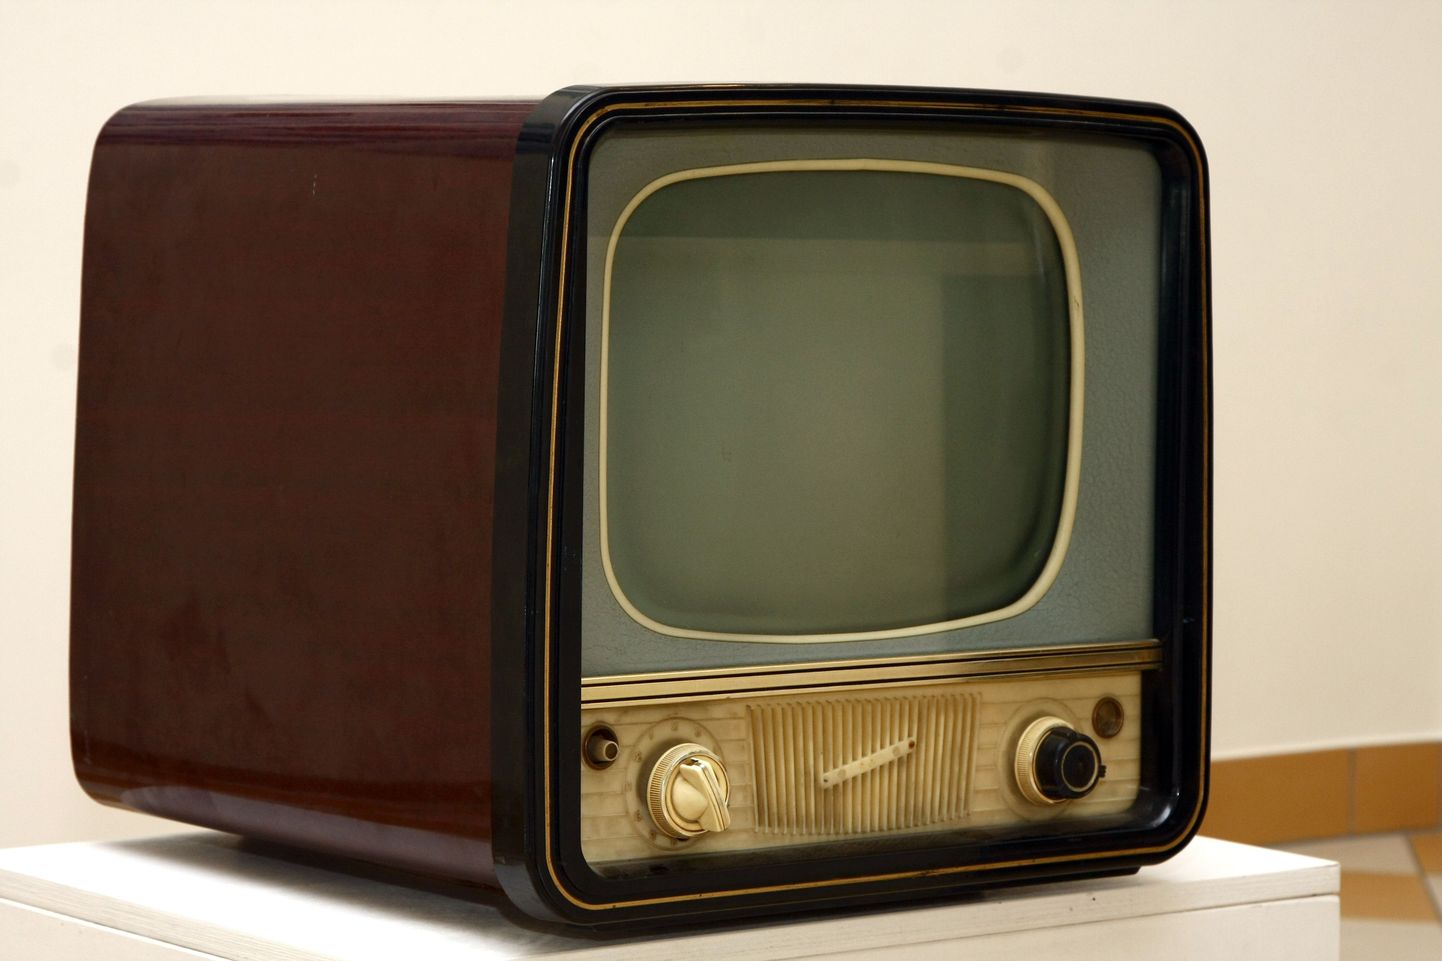 Kui poole sajandi taguse teleri tõstmiseks pidi tublisti jõudu olema ning kuvar moodustas poole tervest seadmest, siis nüüdisaegse teleri liigutamisega saab igaüks hakkama ja asjandus ise koosnebki sisuliselt suurest ekraanist.